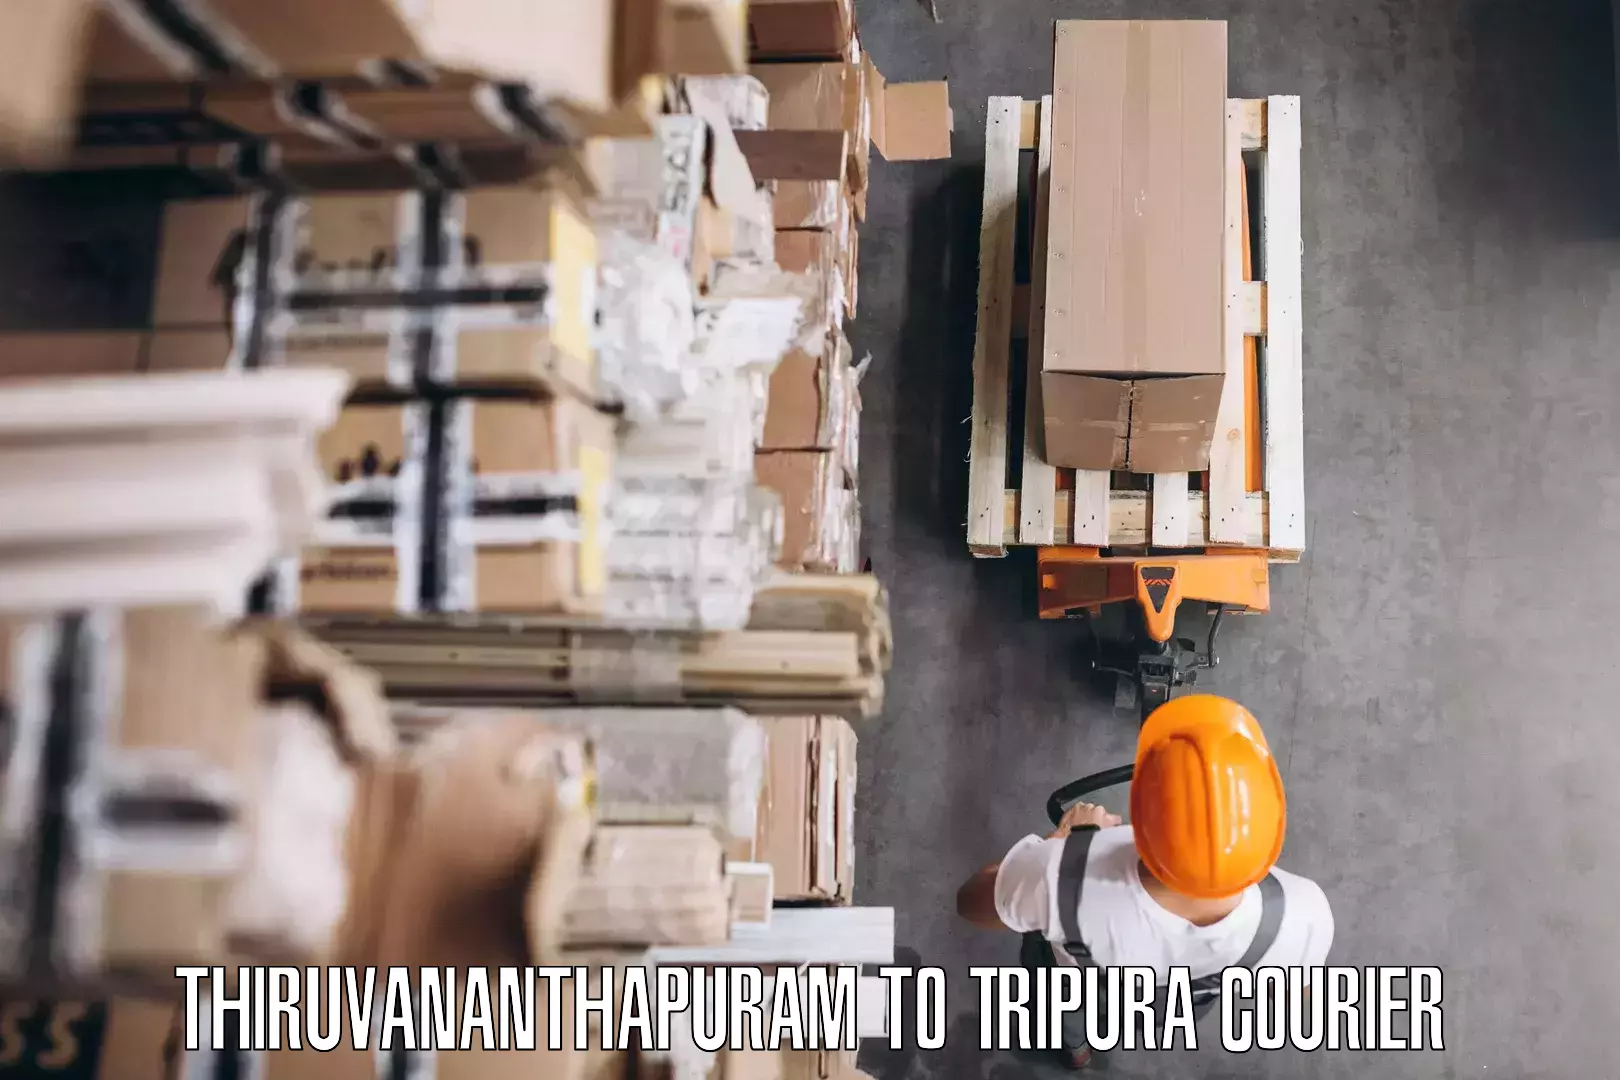 Household transport experts Thiruvananthapuram to Tripura